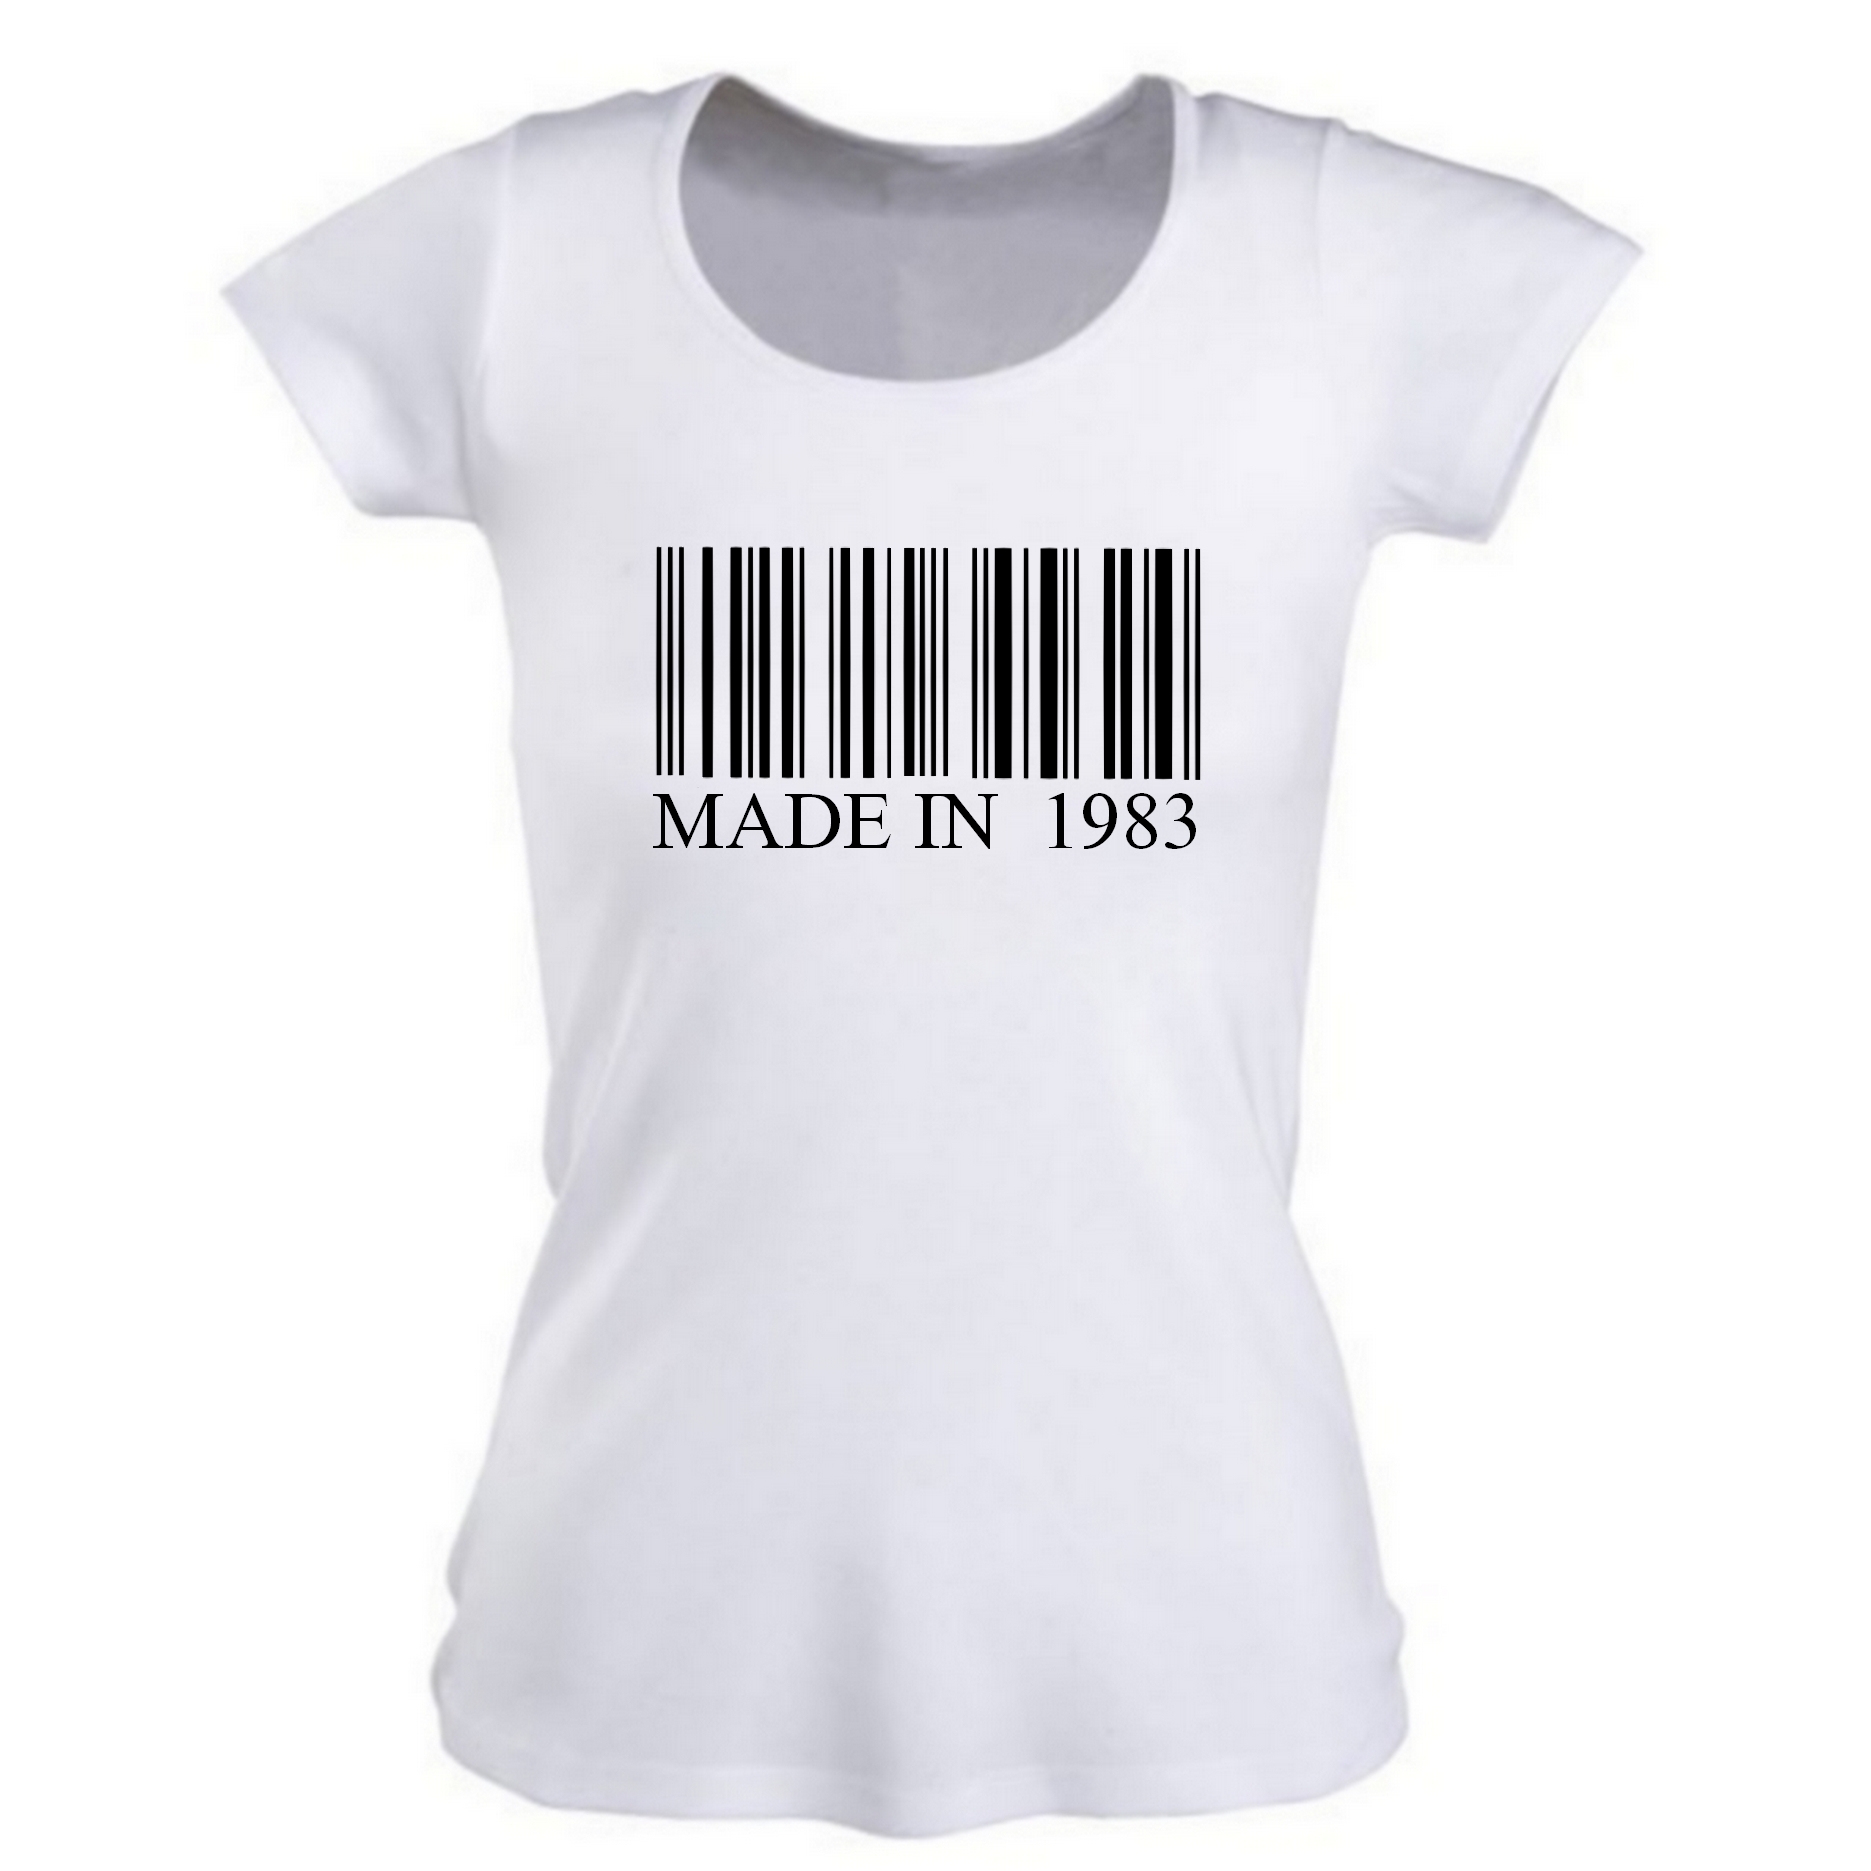 T-shirt femme Made in personnalisé avec année au choix